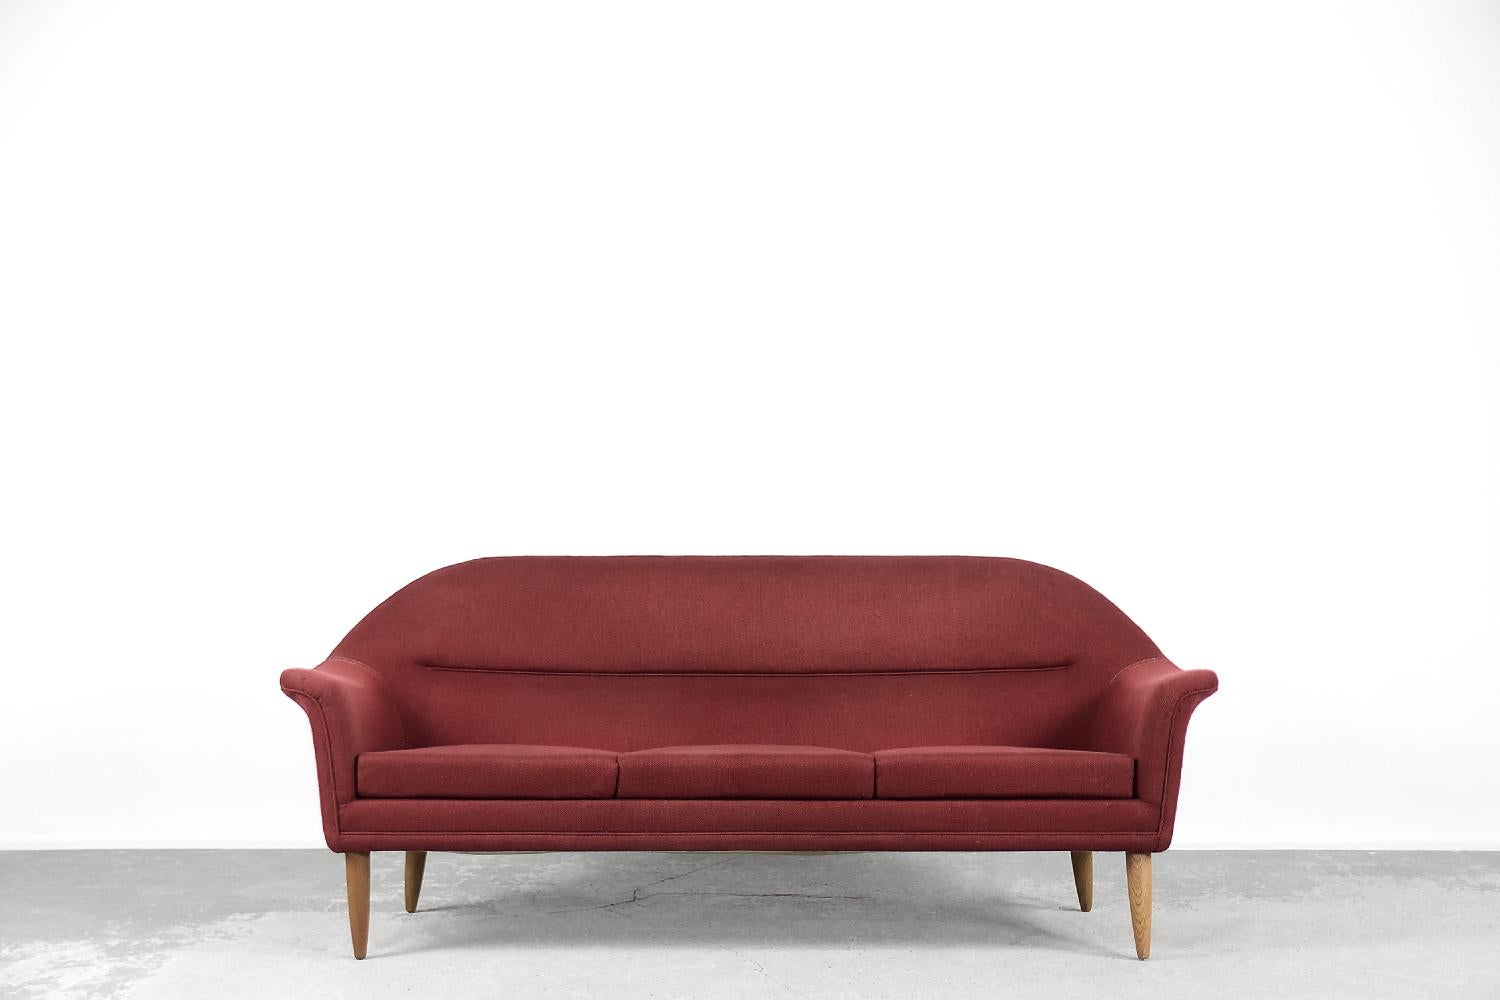 Dieses dreisitzige Sofa wurde in den 1950er Jahren von dem schwedischen Hersteller Bröderna Anderssons produziert. Das Sofa ist mit einem hochwertigen MATERIAL in einem edlen Rotton gepolstert. Er ist ein Beispiel für eine alte Handwerksschule, bei